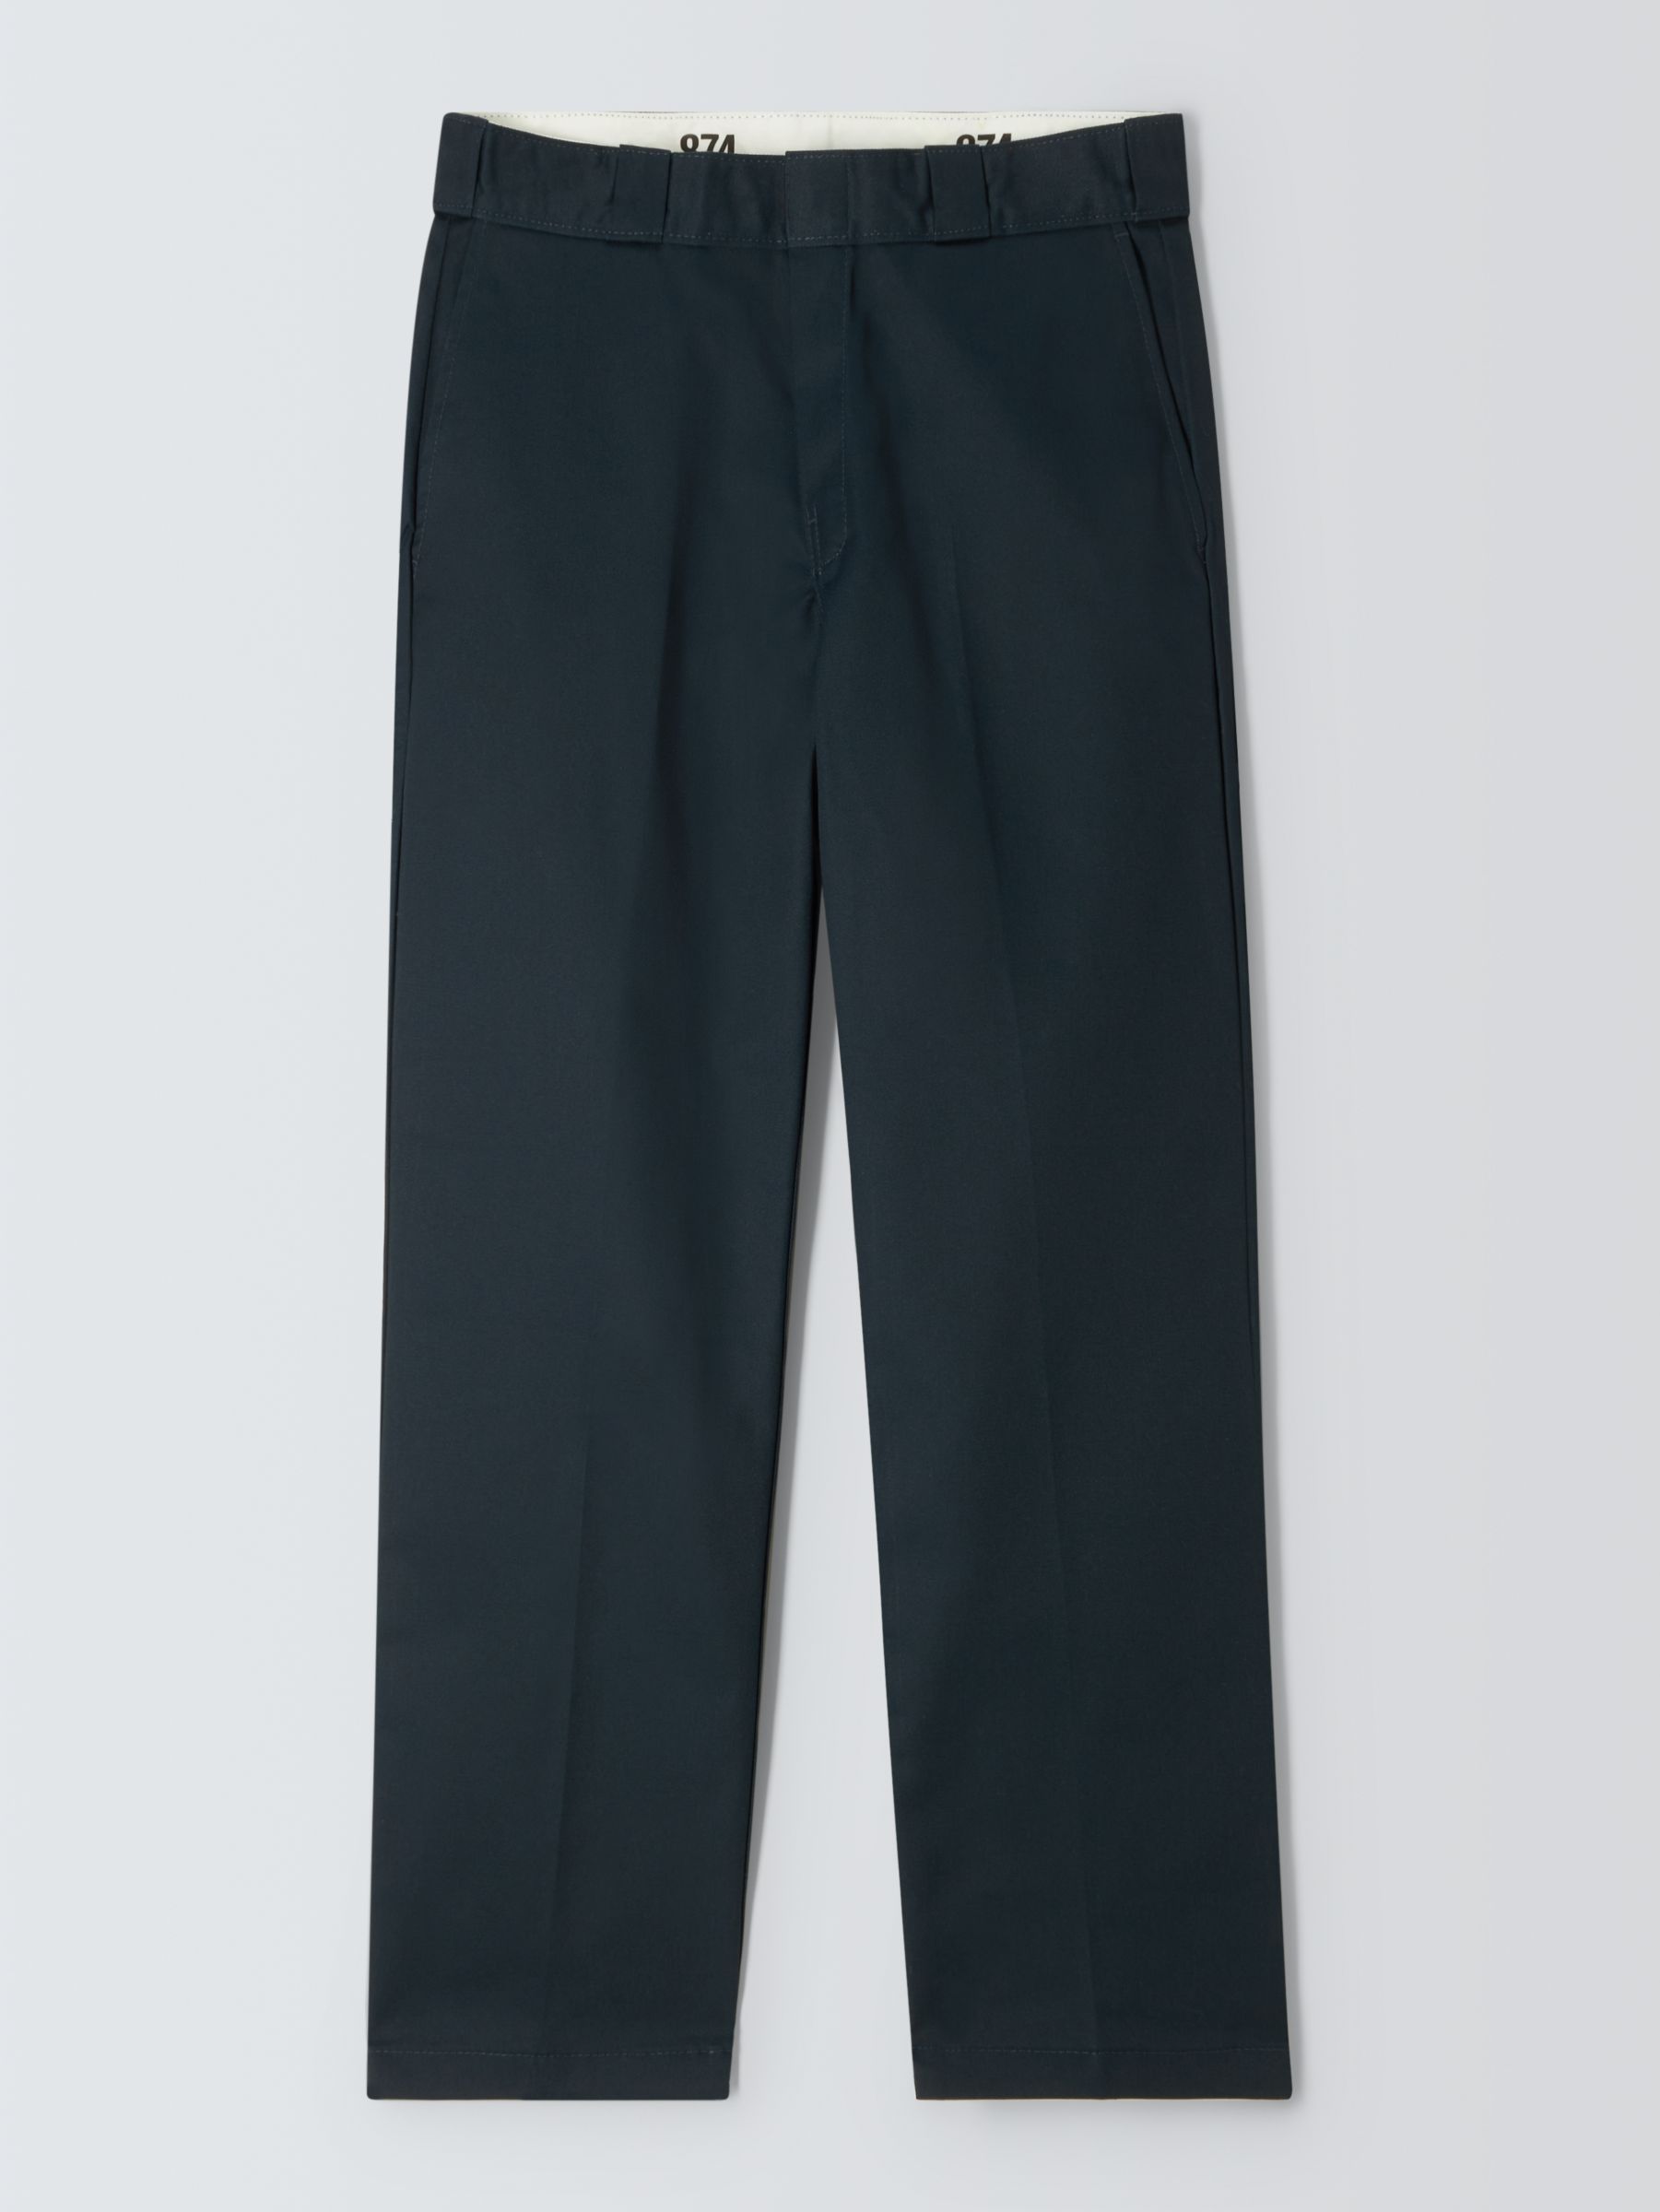 Buy Dickies 874 Work Straight Leg Twill Chino Trousers, Dark Navy Online at johnlewis.com